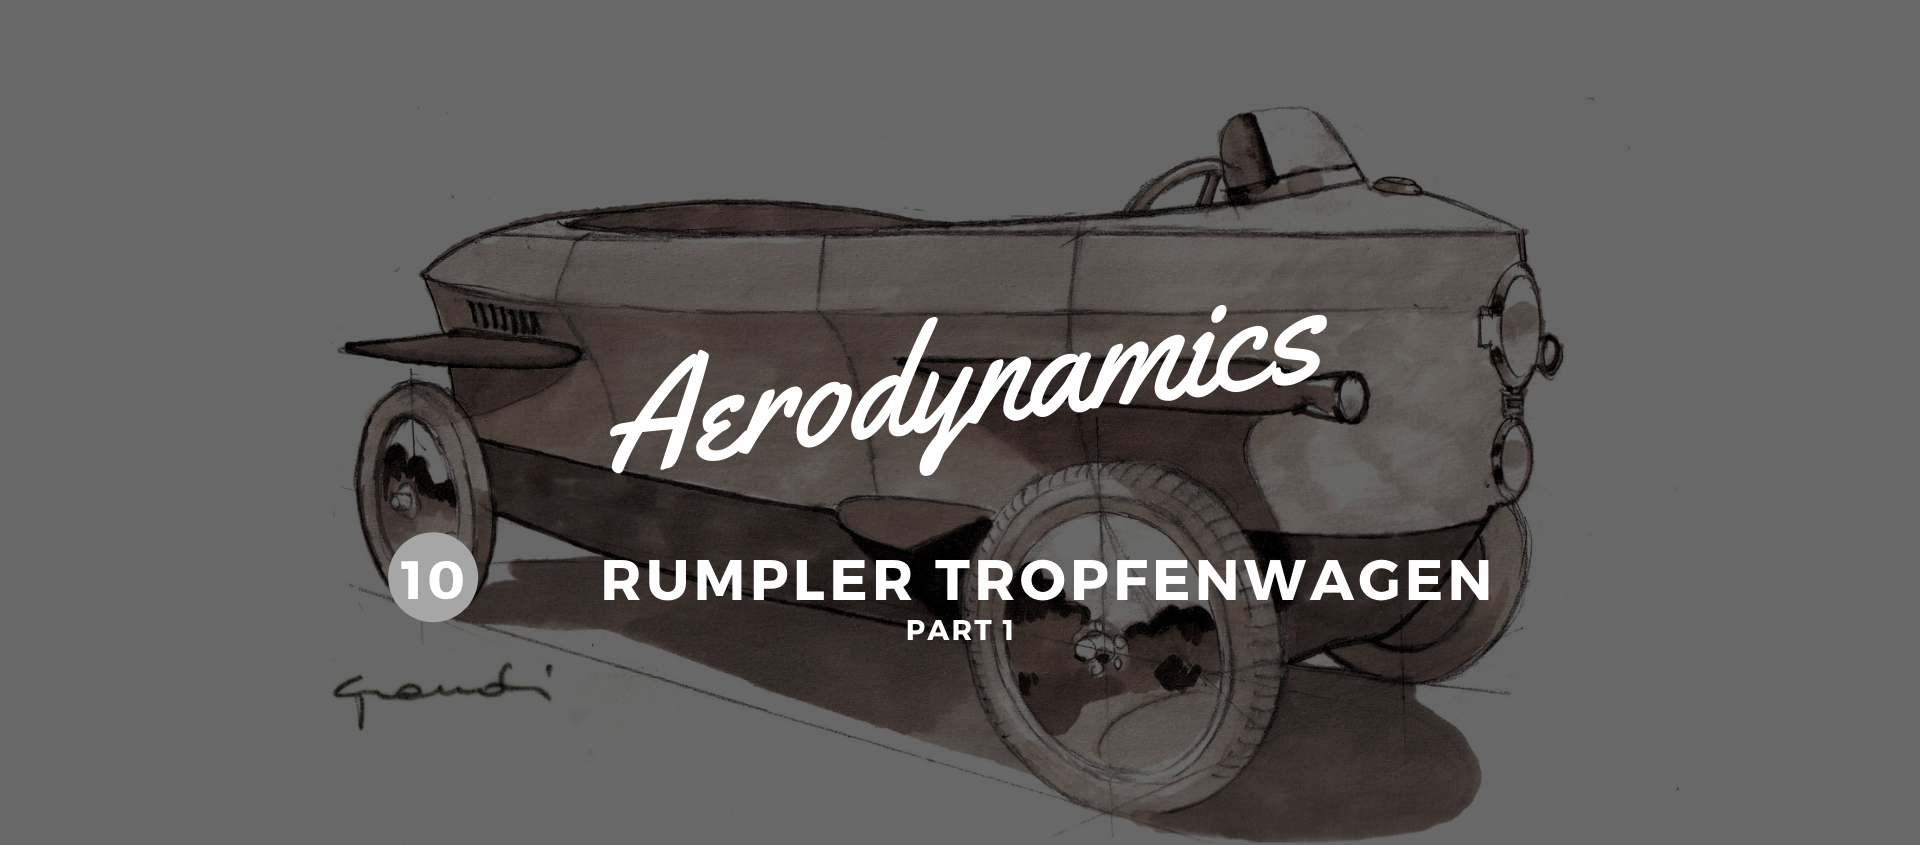 Rumpler Tropfenwagen. From the seaplane to the road